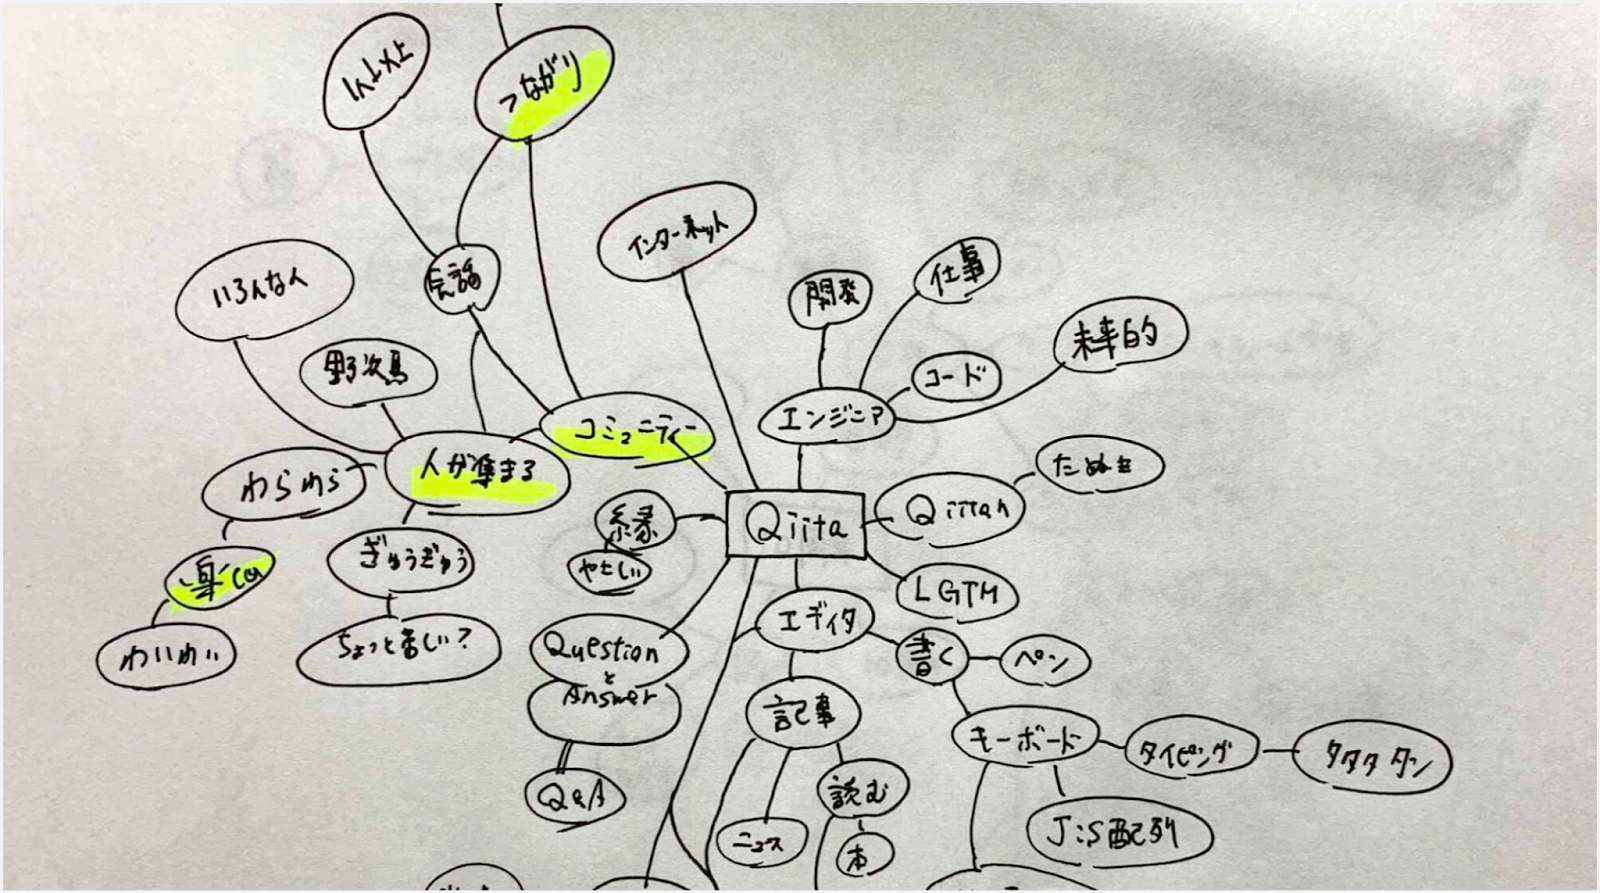 「Qiita」「10周年」からマインドマップ形式でキーワードを紙にペンで書き出されている様子